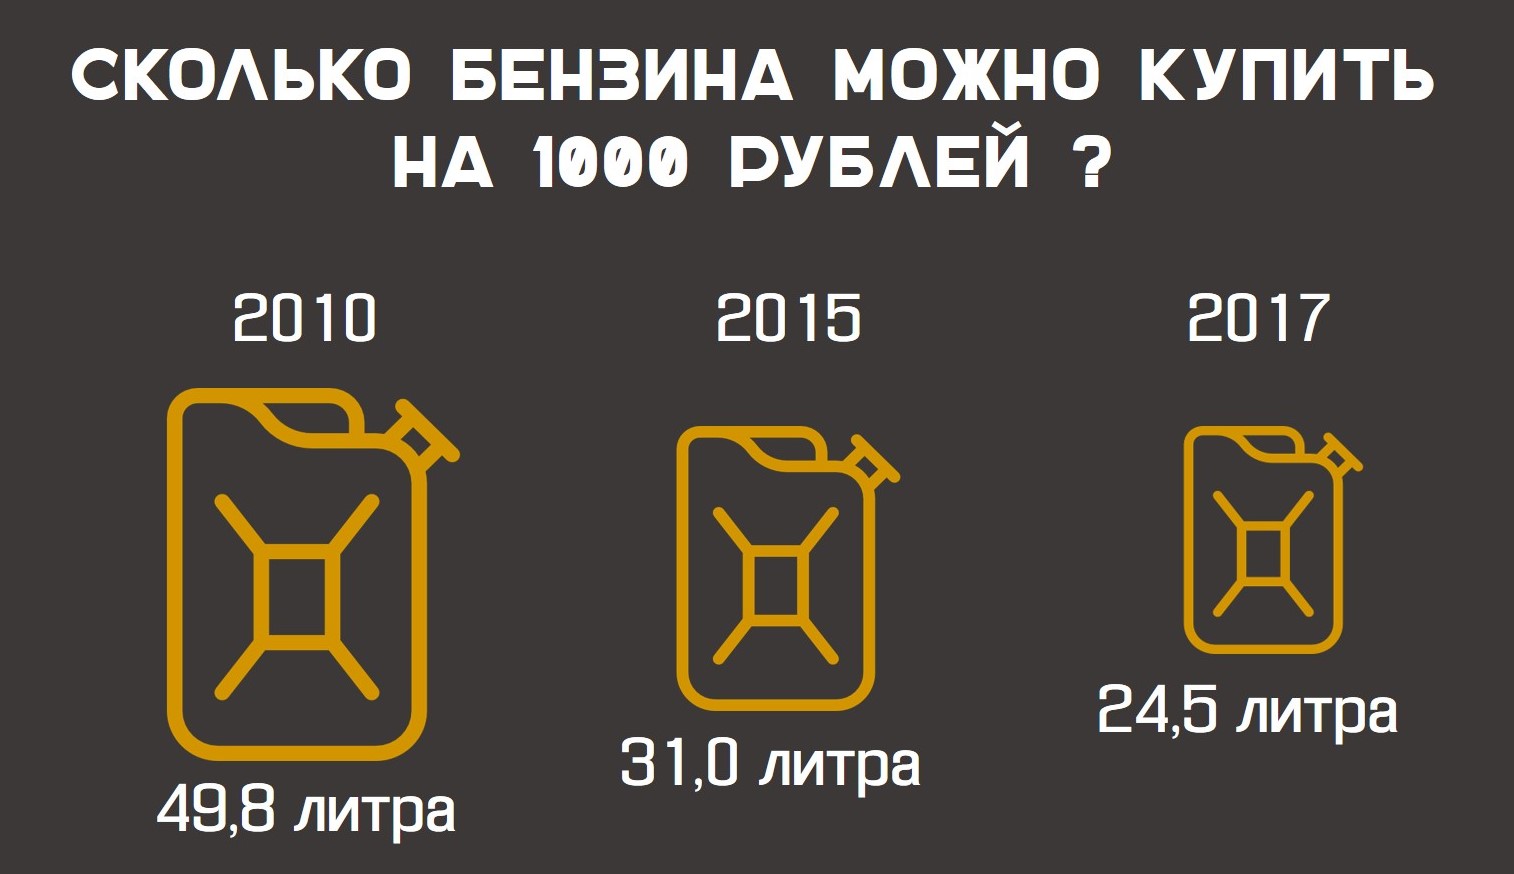 сколько можно купить бензина https://grosh-blog.ru